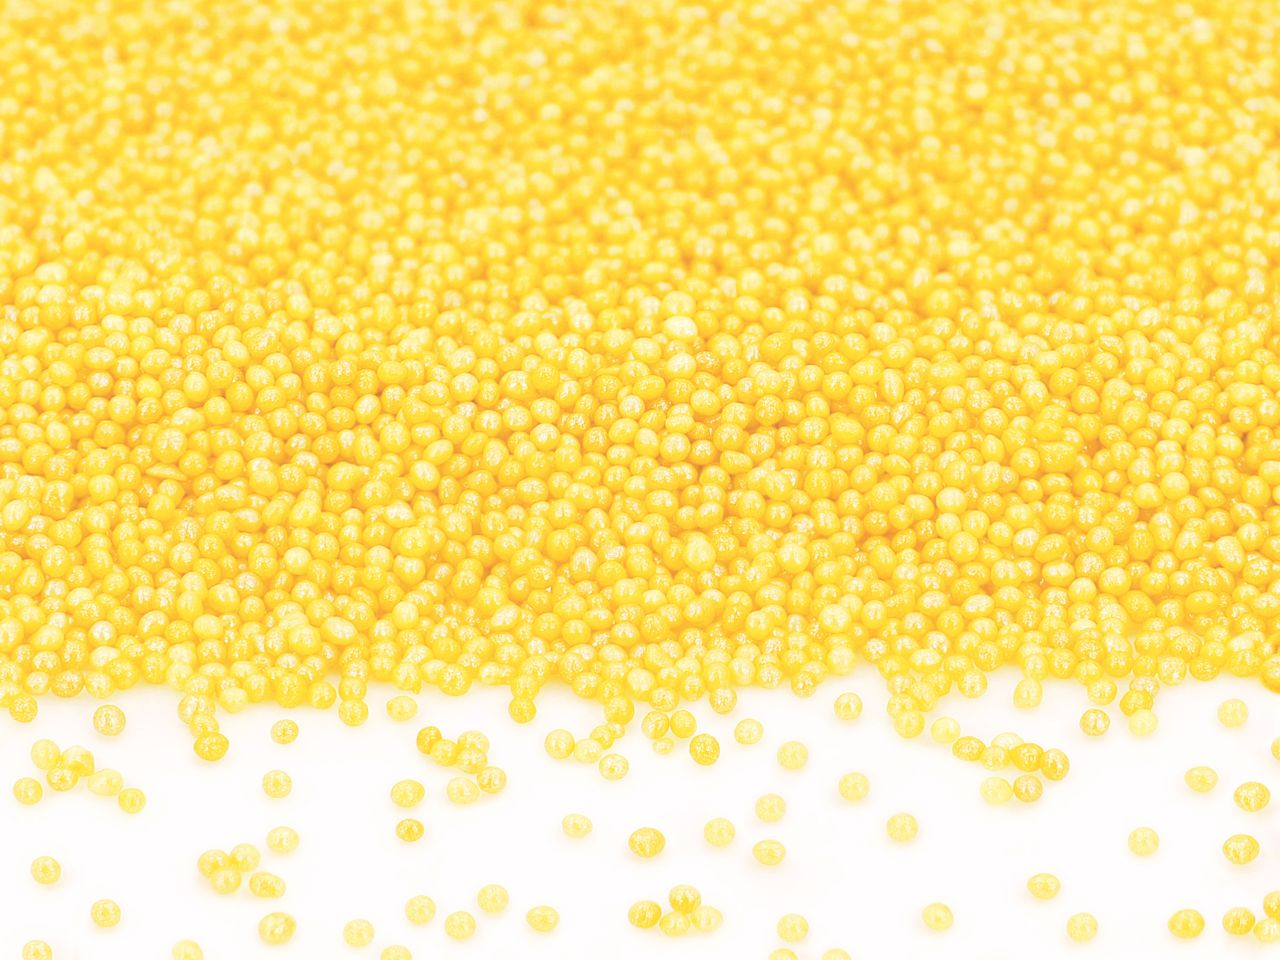 Mini-Perlen gelb-glimmer 100g